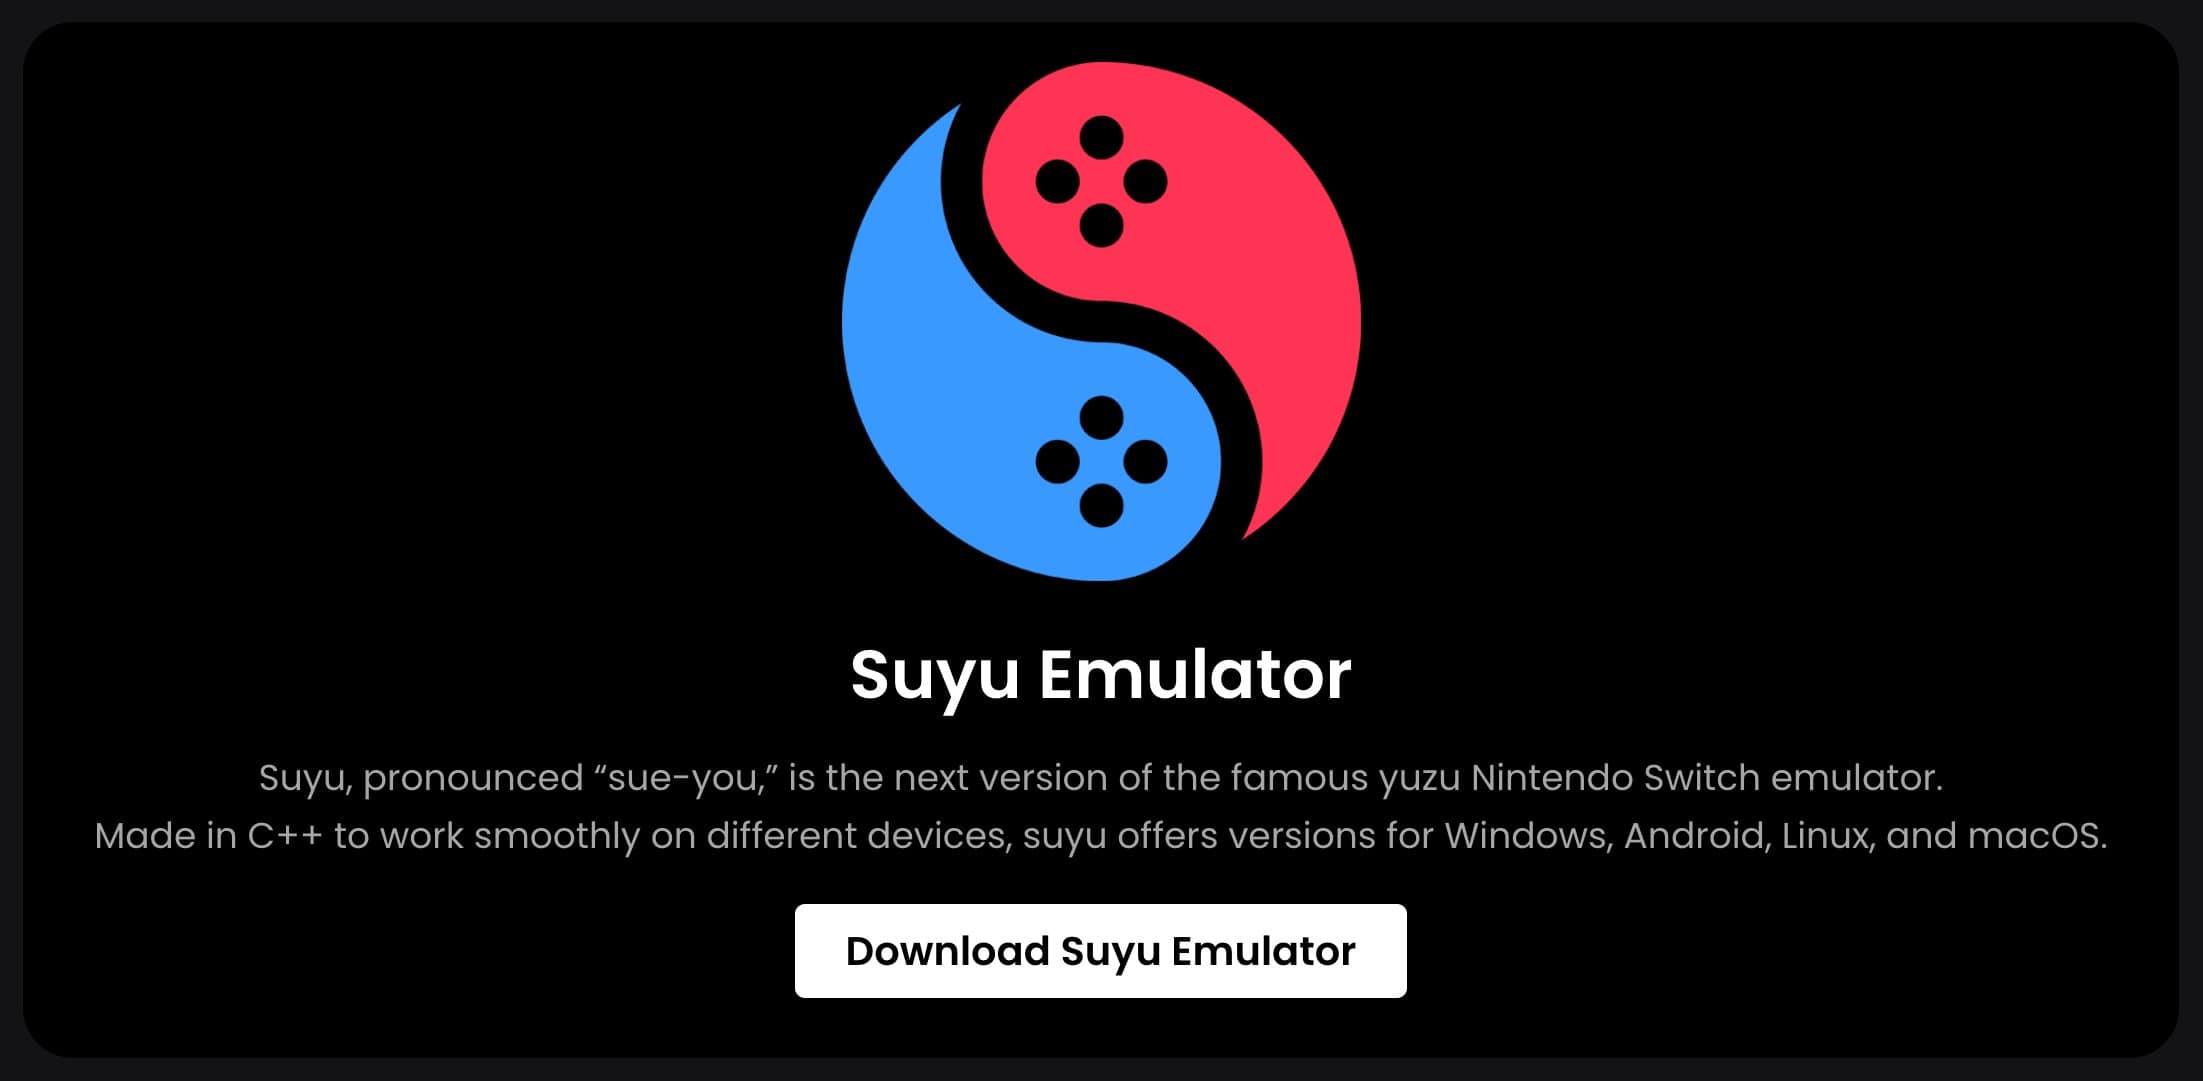 Nintendo Switchエミュレータ「Suyu」の最初のビルドがまもなく登場、AndroidやmacOS版も